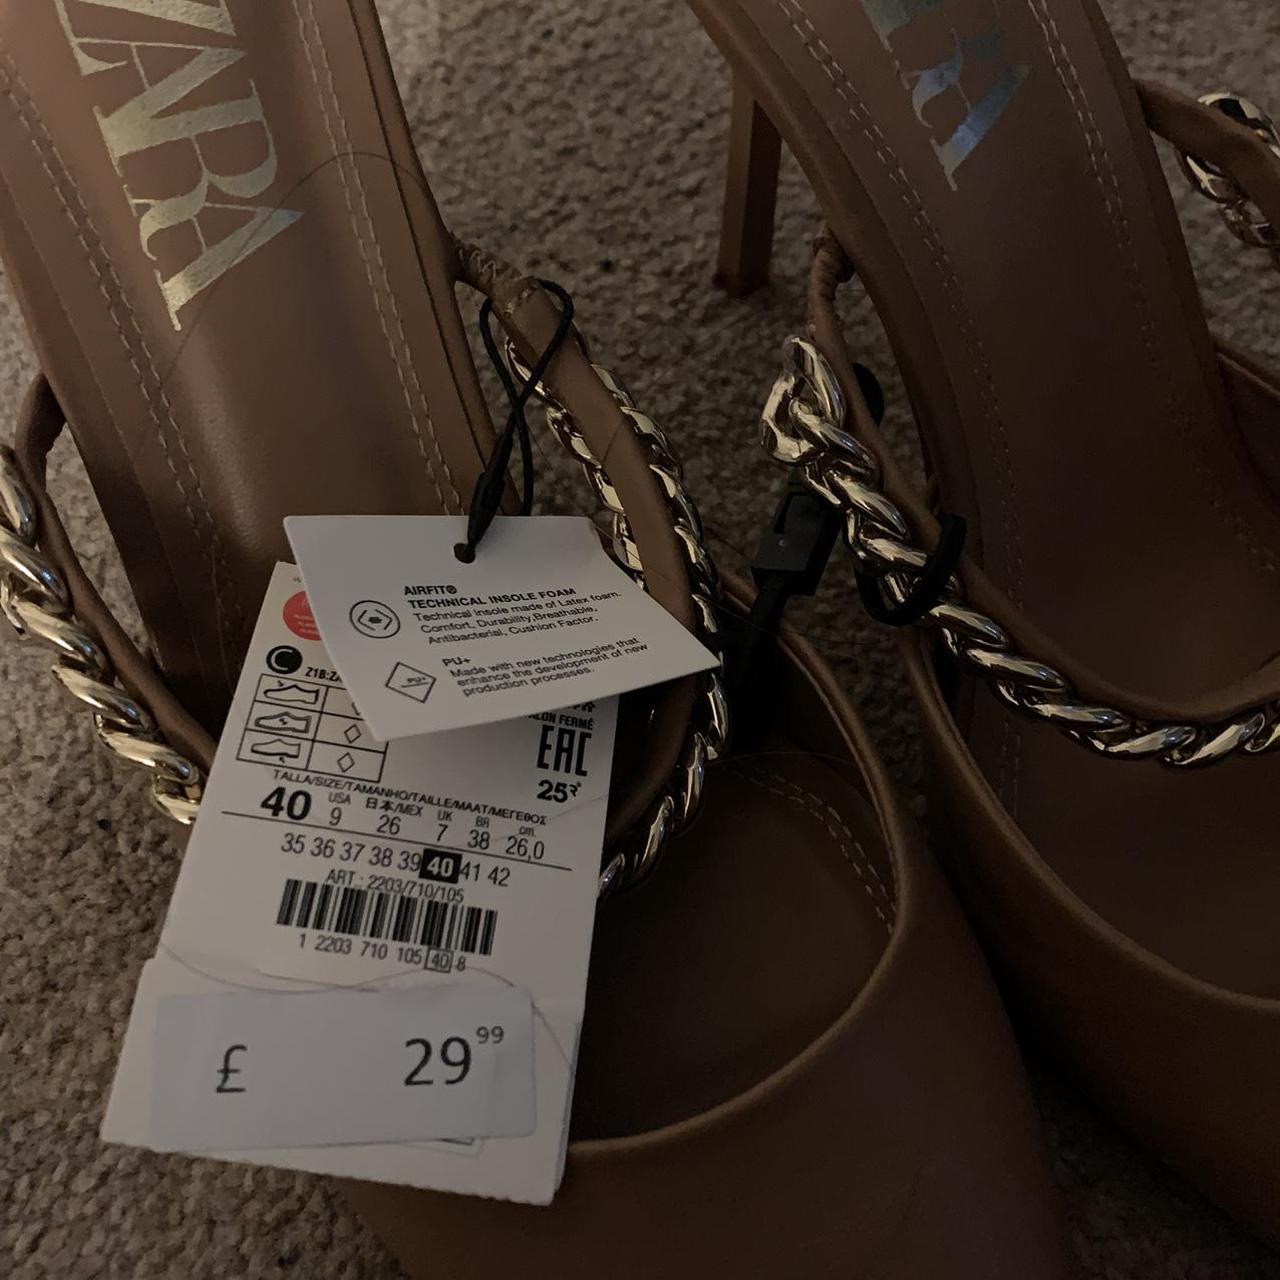 Product Image 2 - Zara nude mule heels
Size: UK